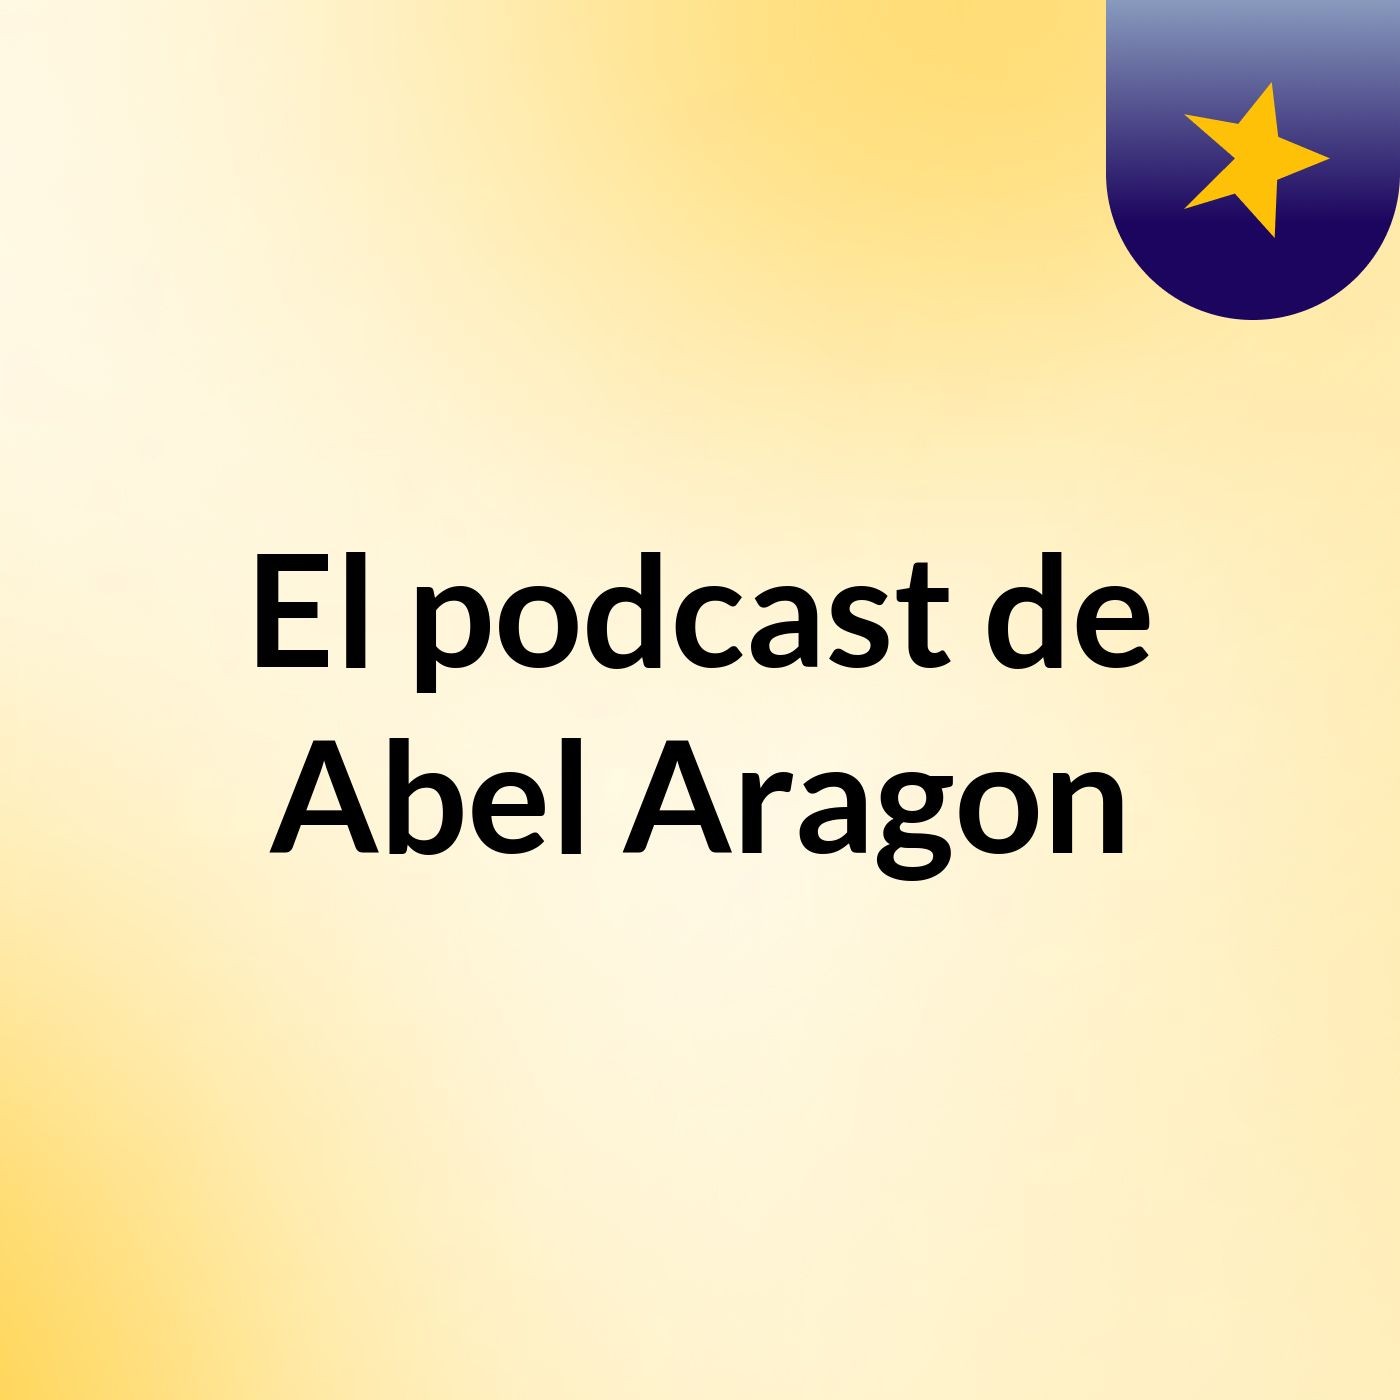 El podcast de Abel Aragon